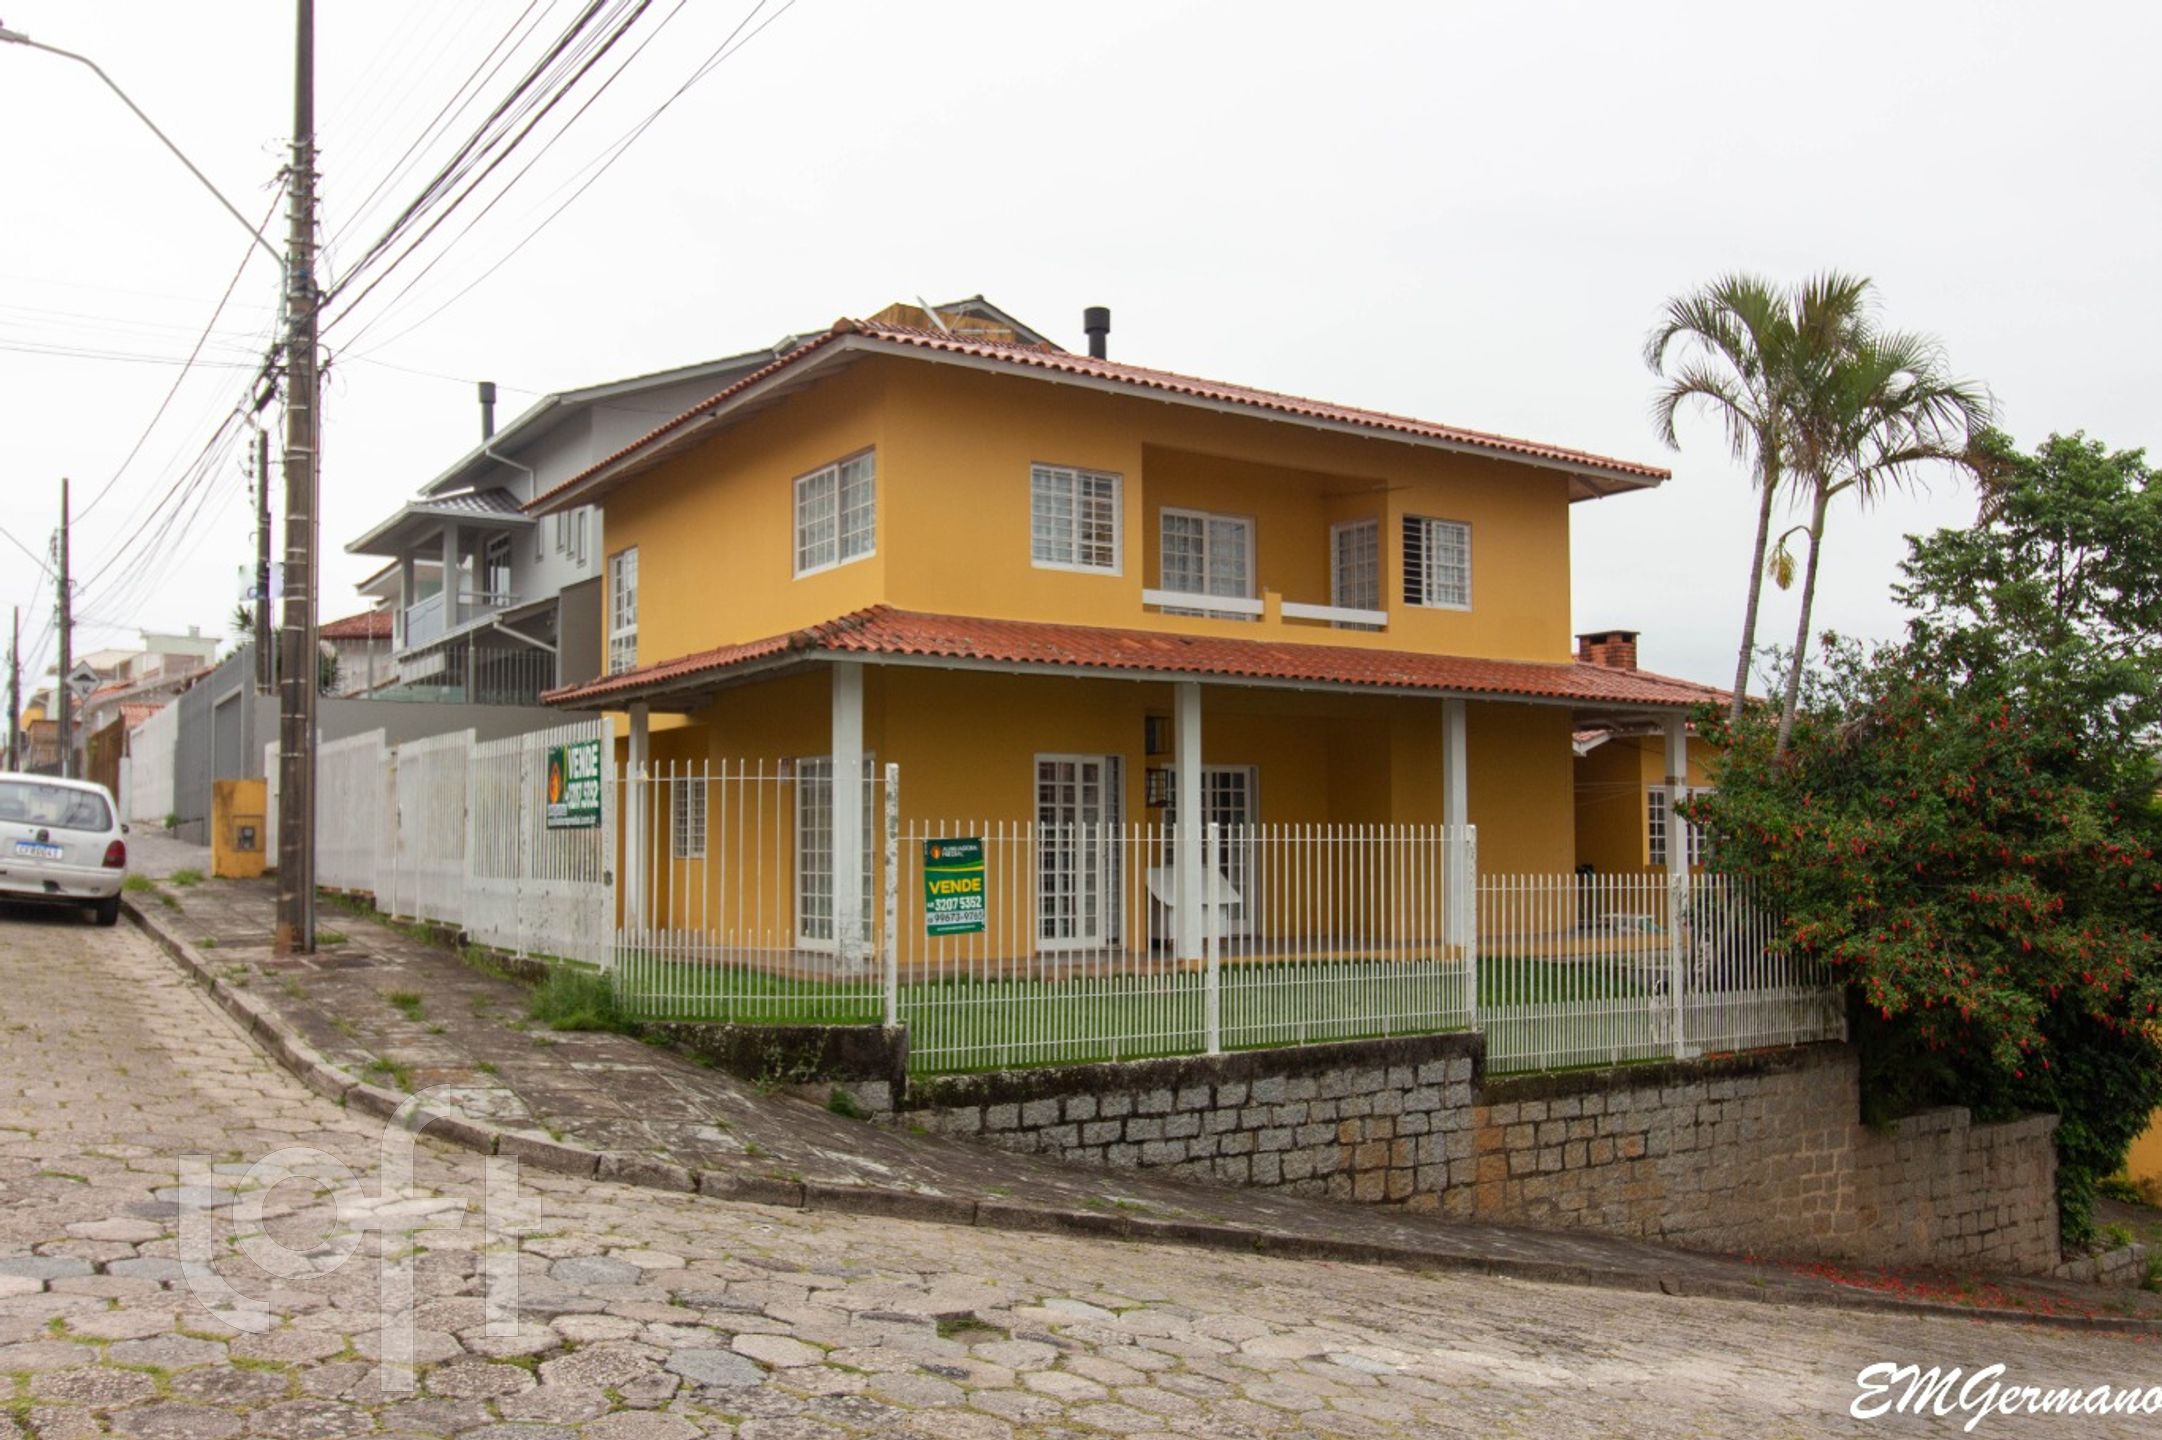 VENDA &#8211; Casa de 4 quartos no bairro Jardim Atlântico, Florianópolis &#8211; PUnz321e